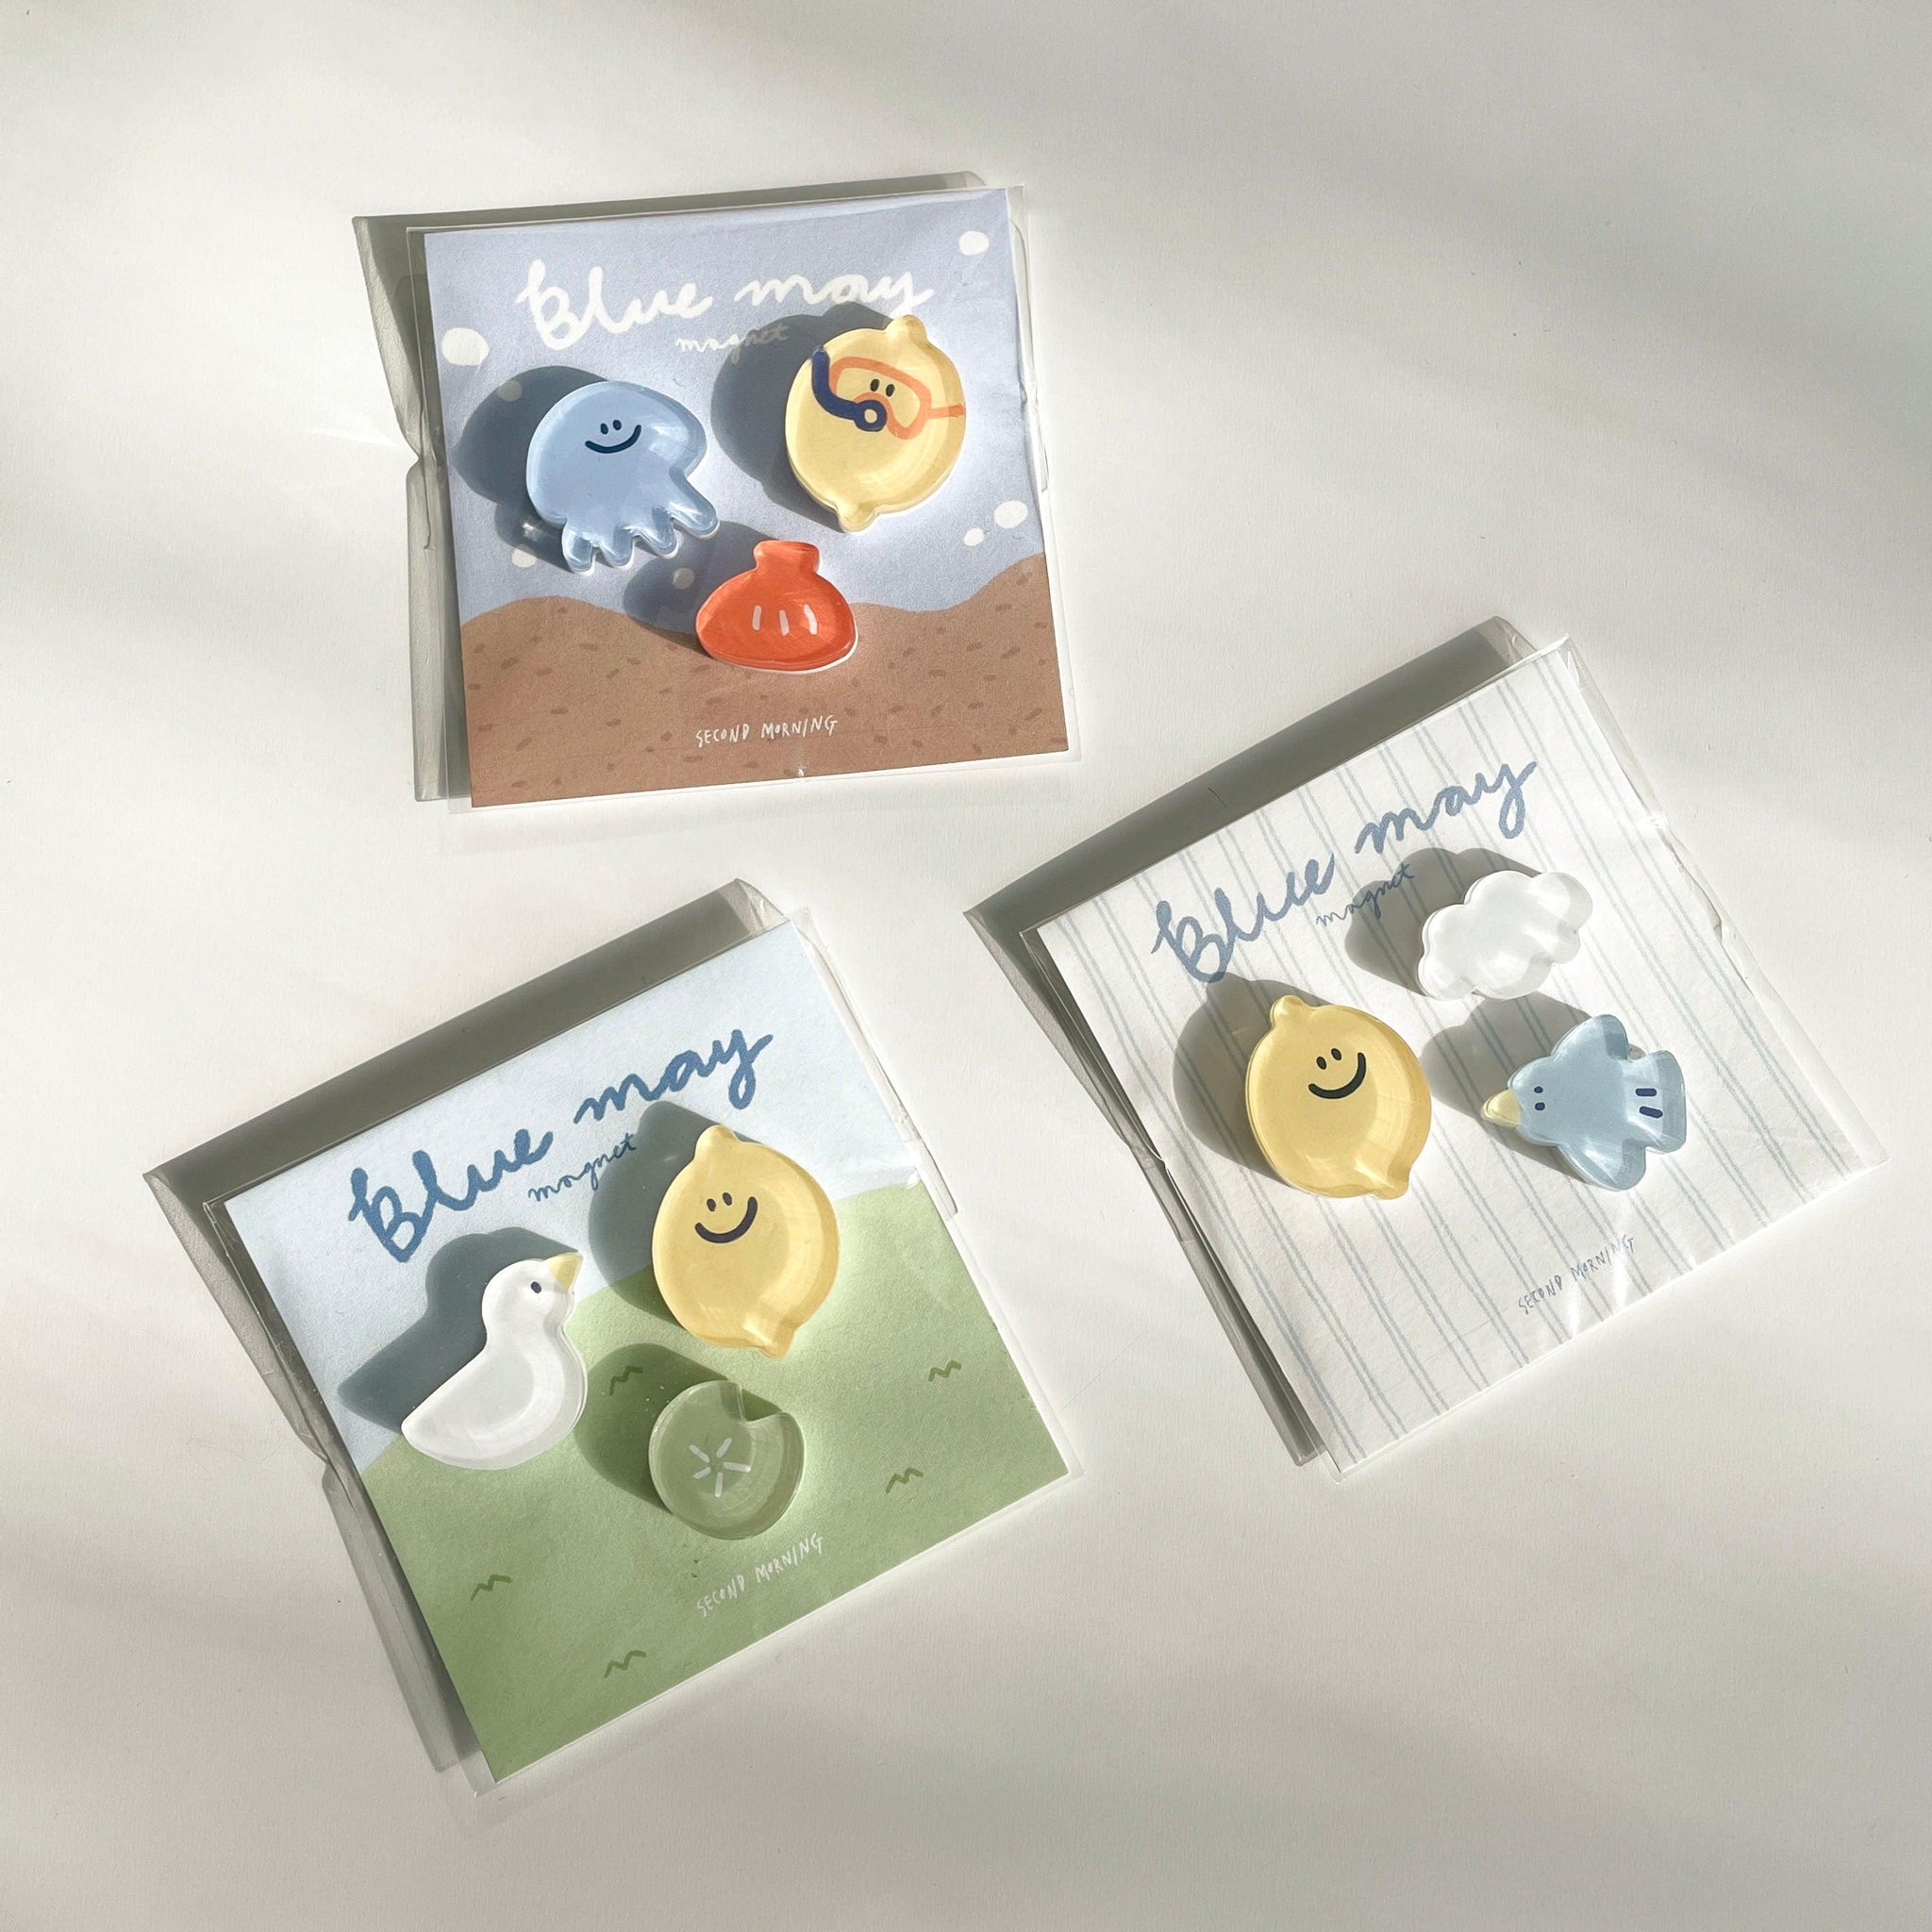 【現貨】Second Morning Blue May Magnet 限量版磁石 - SOUL SIMPLE HK